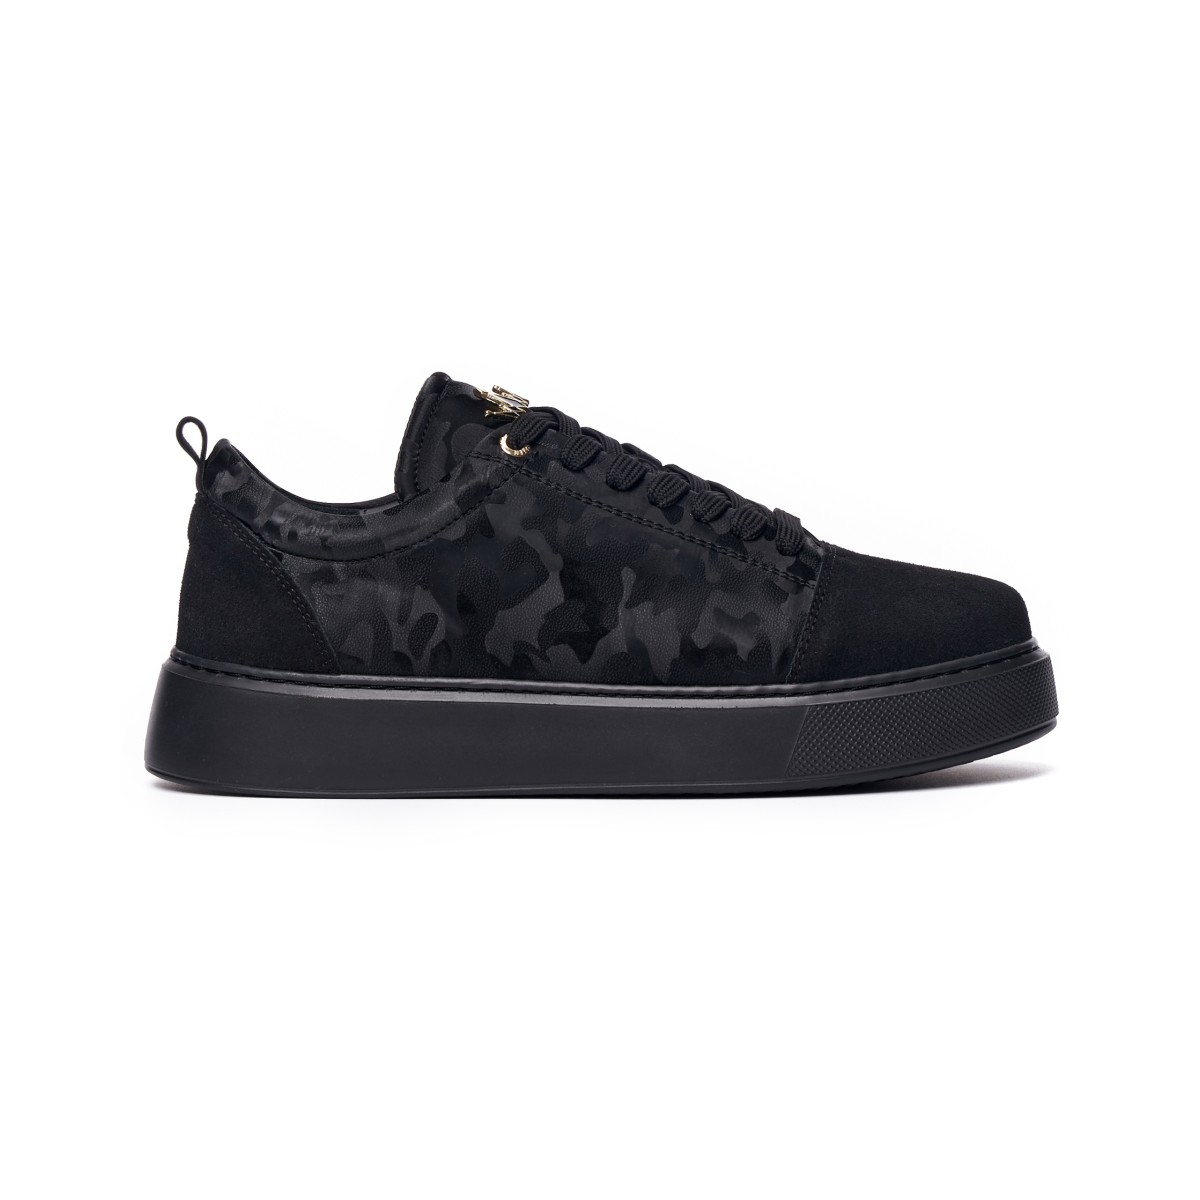 Herren Chunky Sneakers Schuhe mit Krone in schwarz-camouflage - Schwarz